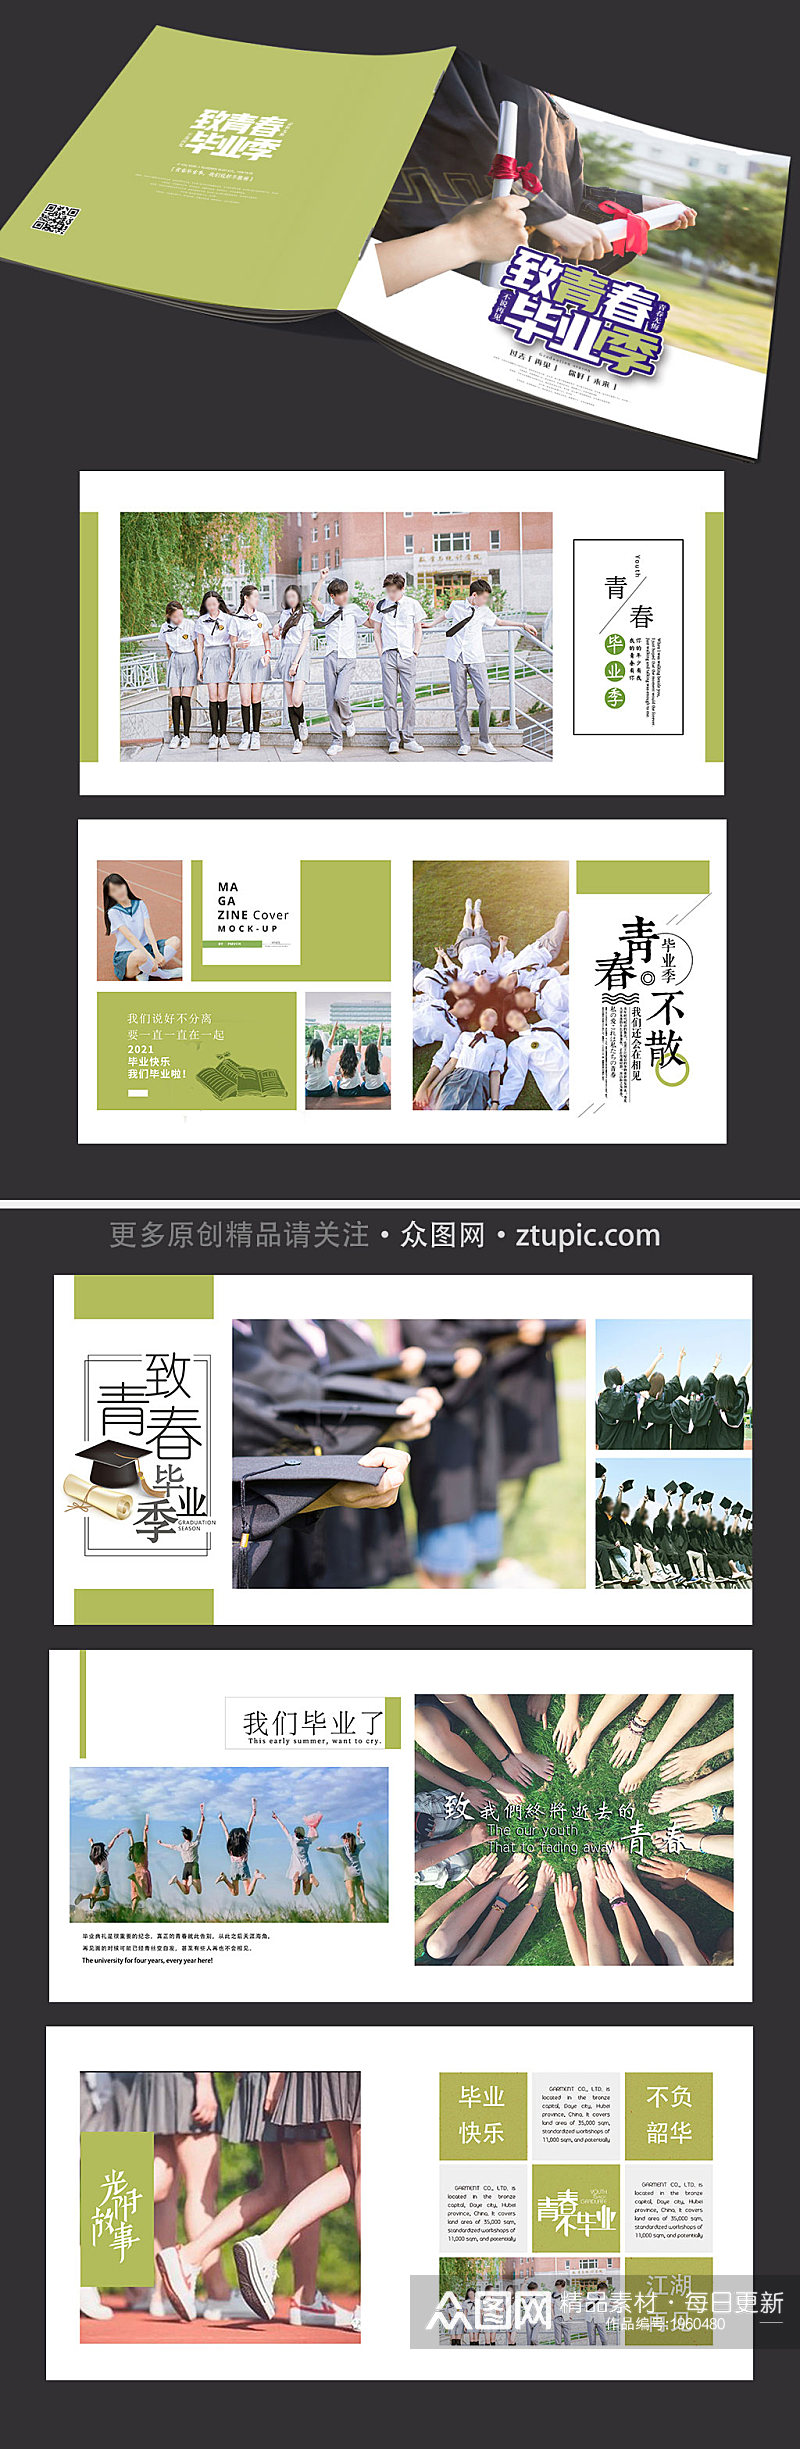 小清新黄绿色毕业季纪念相册画册素材